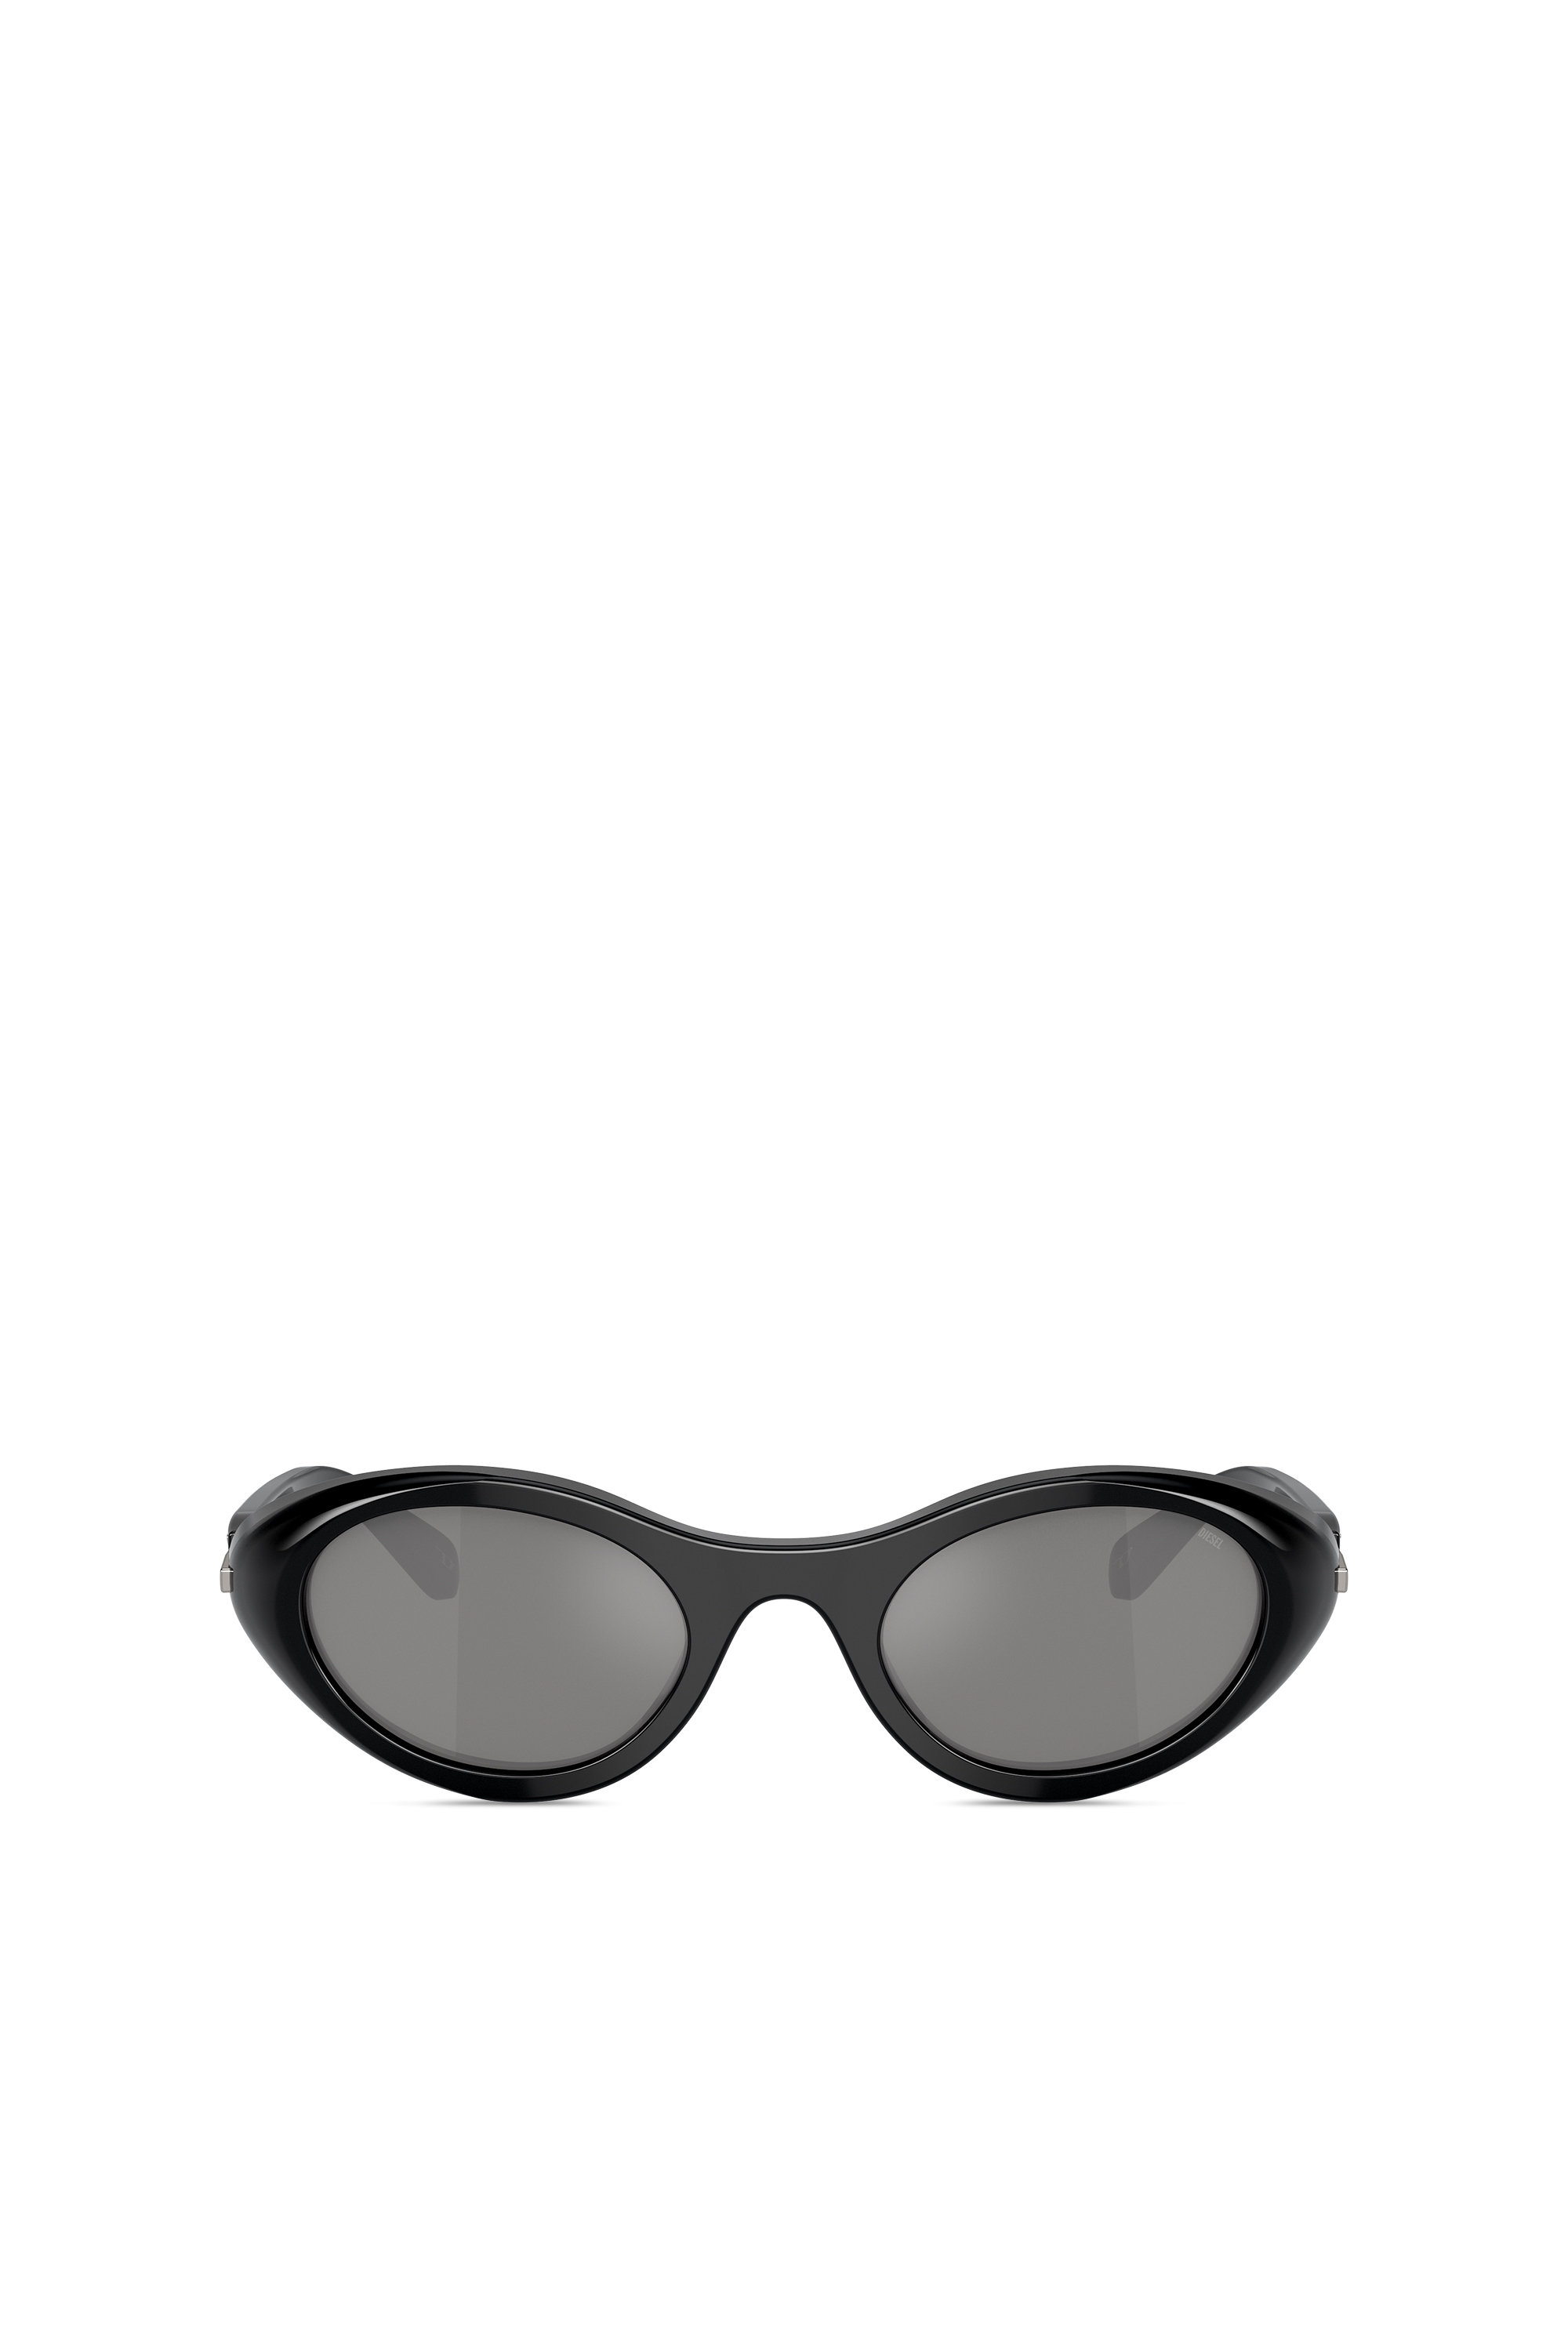 Diesel - Sonnenbrille in Wrap-Around-Form - Sonnenbrille - Unisex - Schwarz